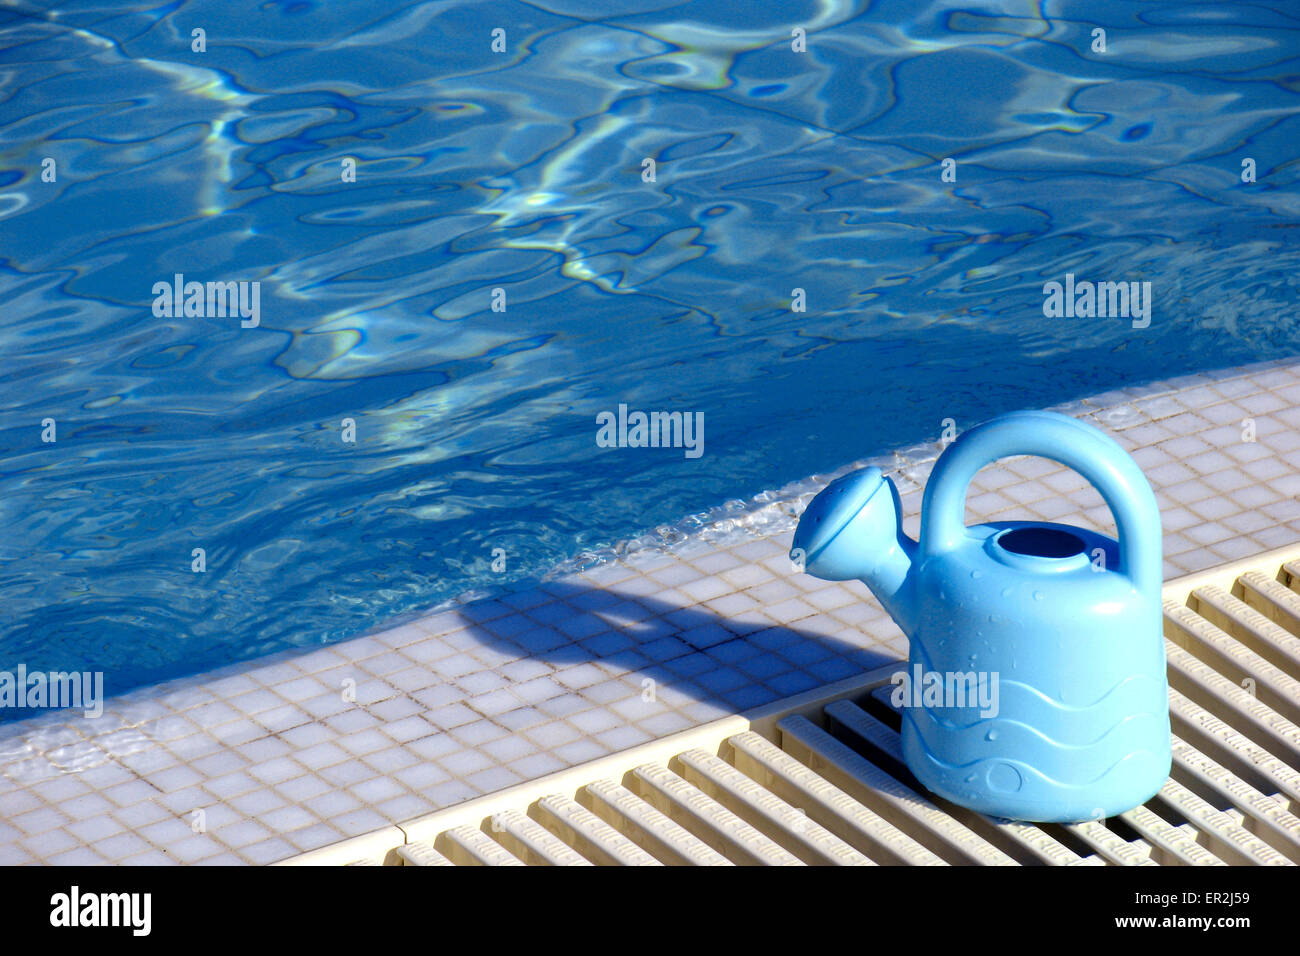 Aussen Piscina Giesskanne Spielzeug Farbe Poolrand Wasser Blau Sommer Urlaub Freizeit Holiday Swimmingpool Konzepte Still Life Foto Stock